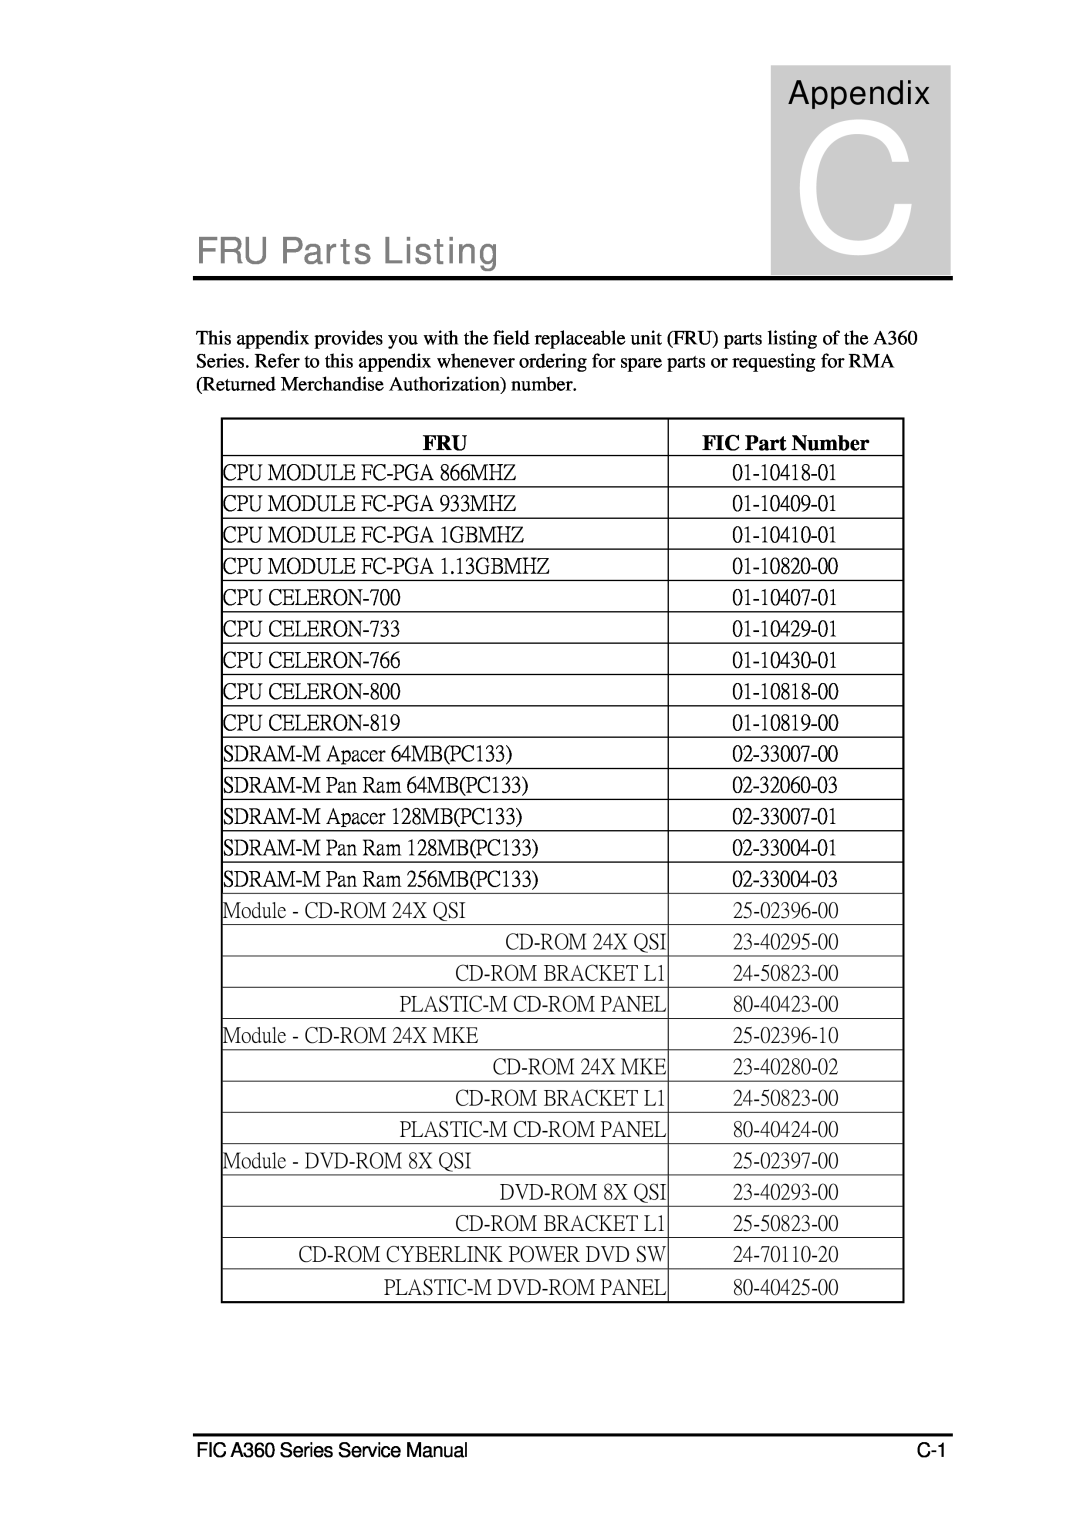 FIC A360 service manual FRU Parts Listing, AppendixC, FIC Part Number 